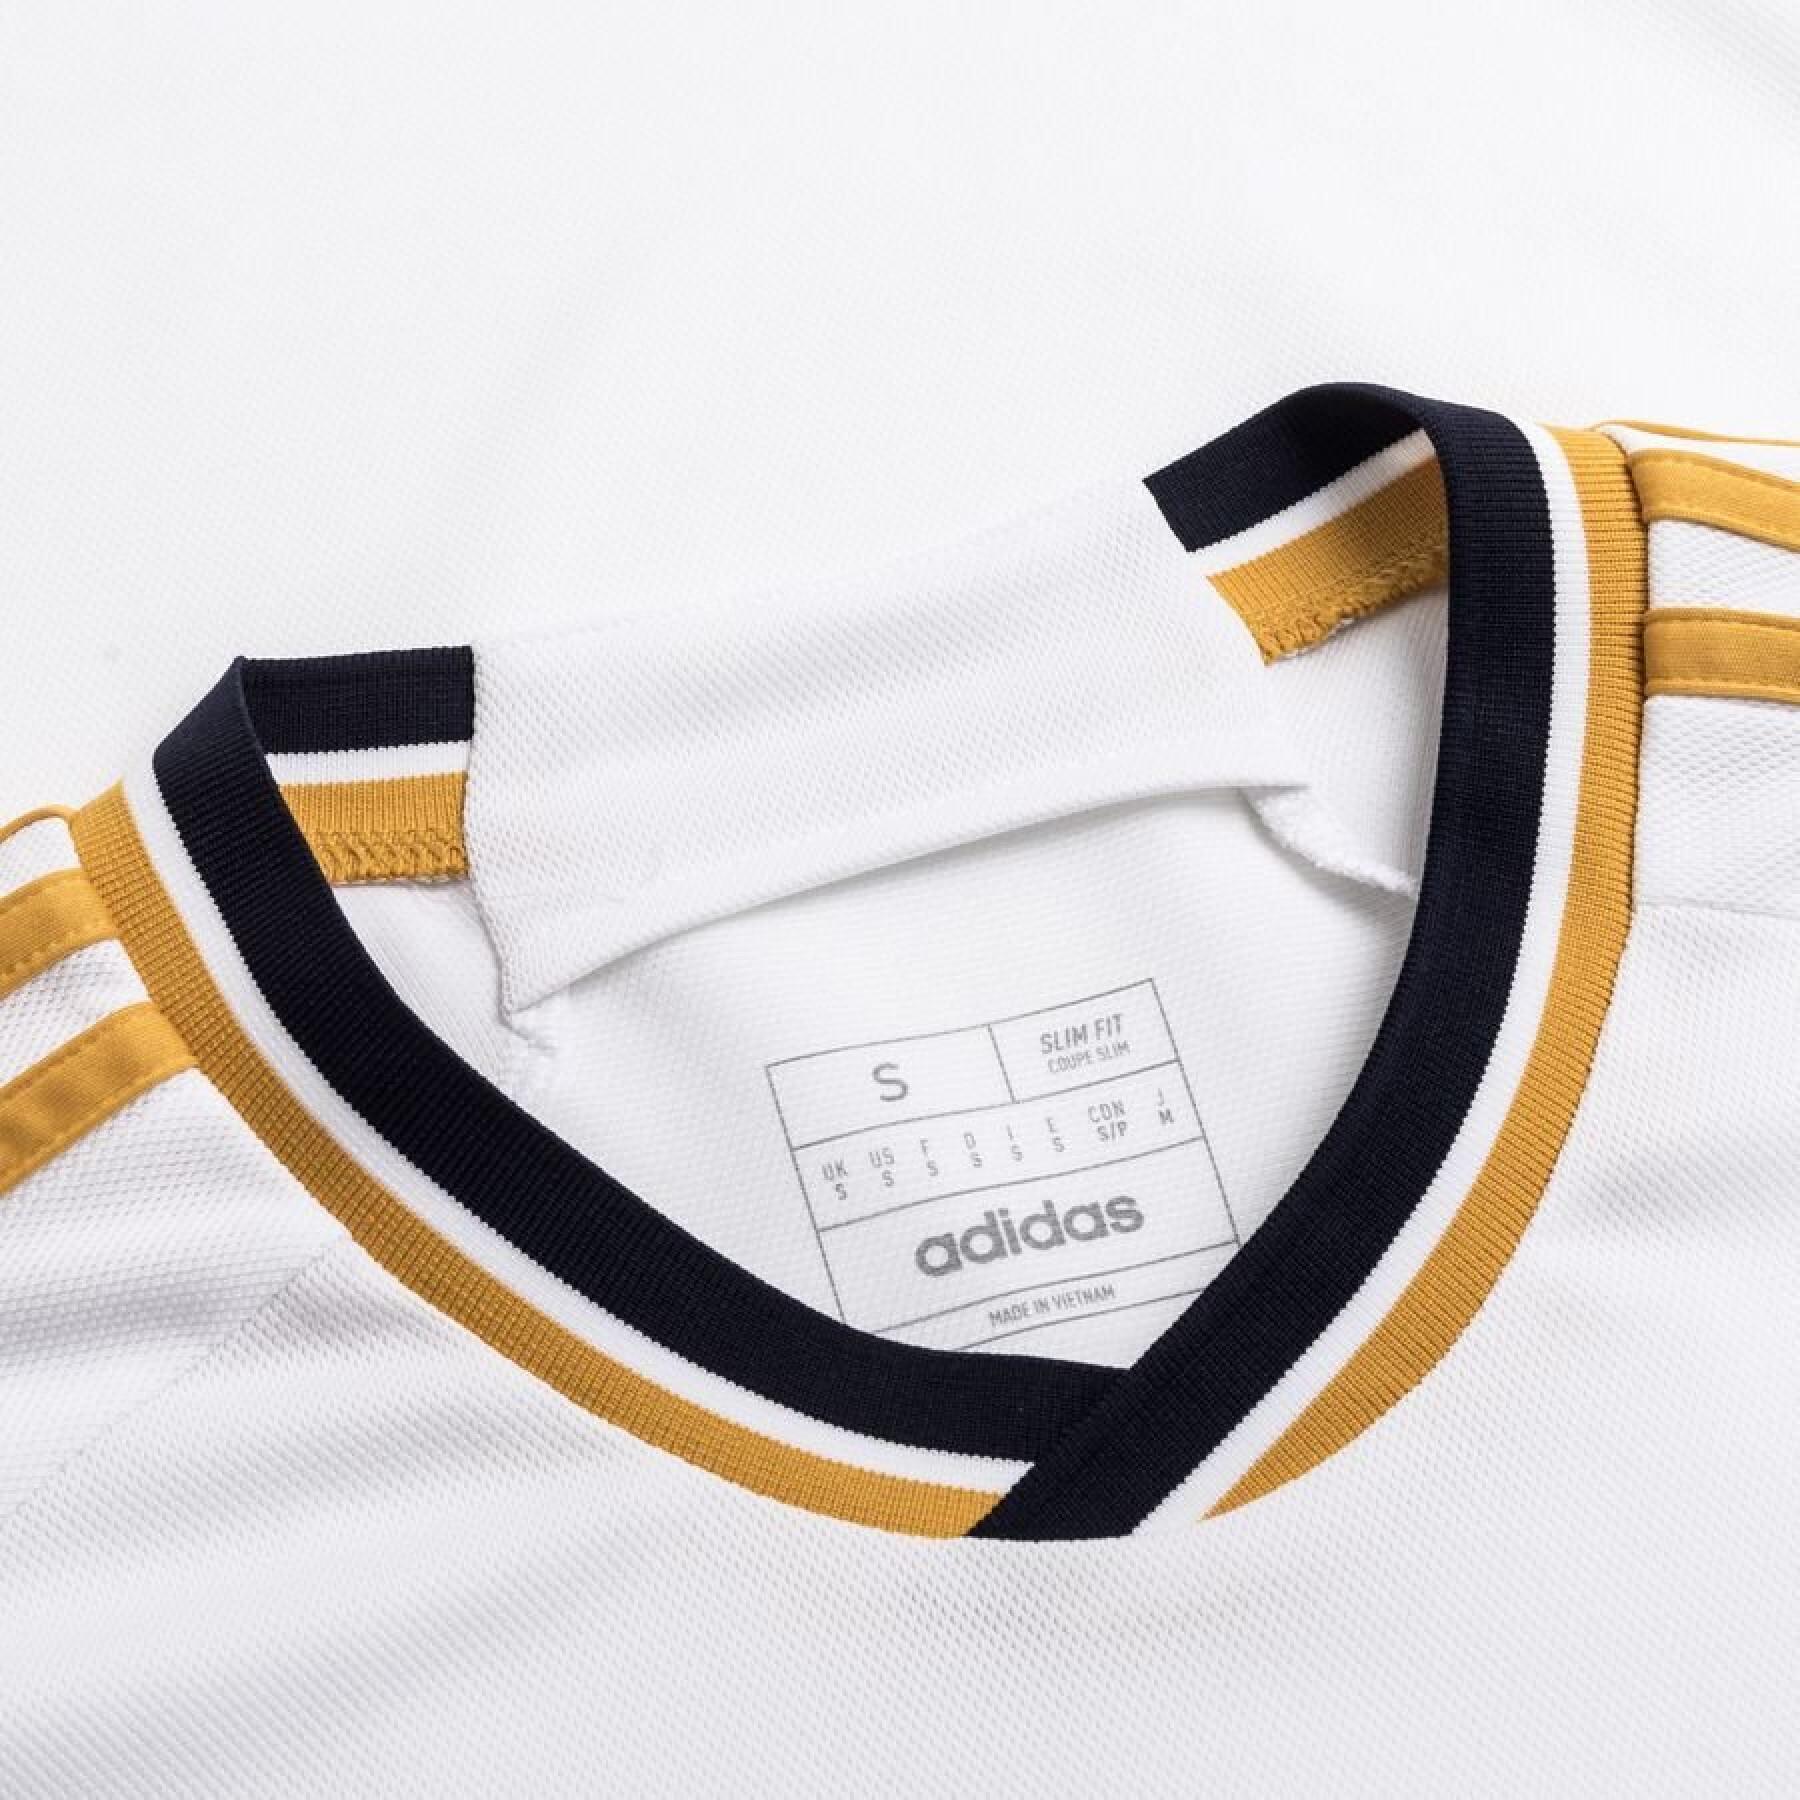 Camiseta primera equipación para niños Real Madrid 2023/24 - La Liga -  Equipos - Niños